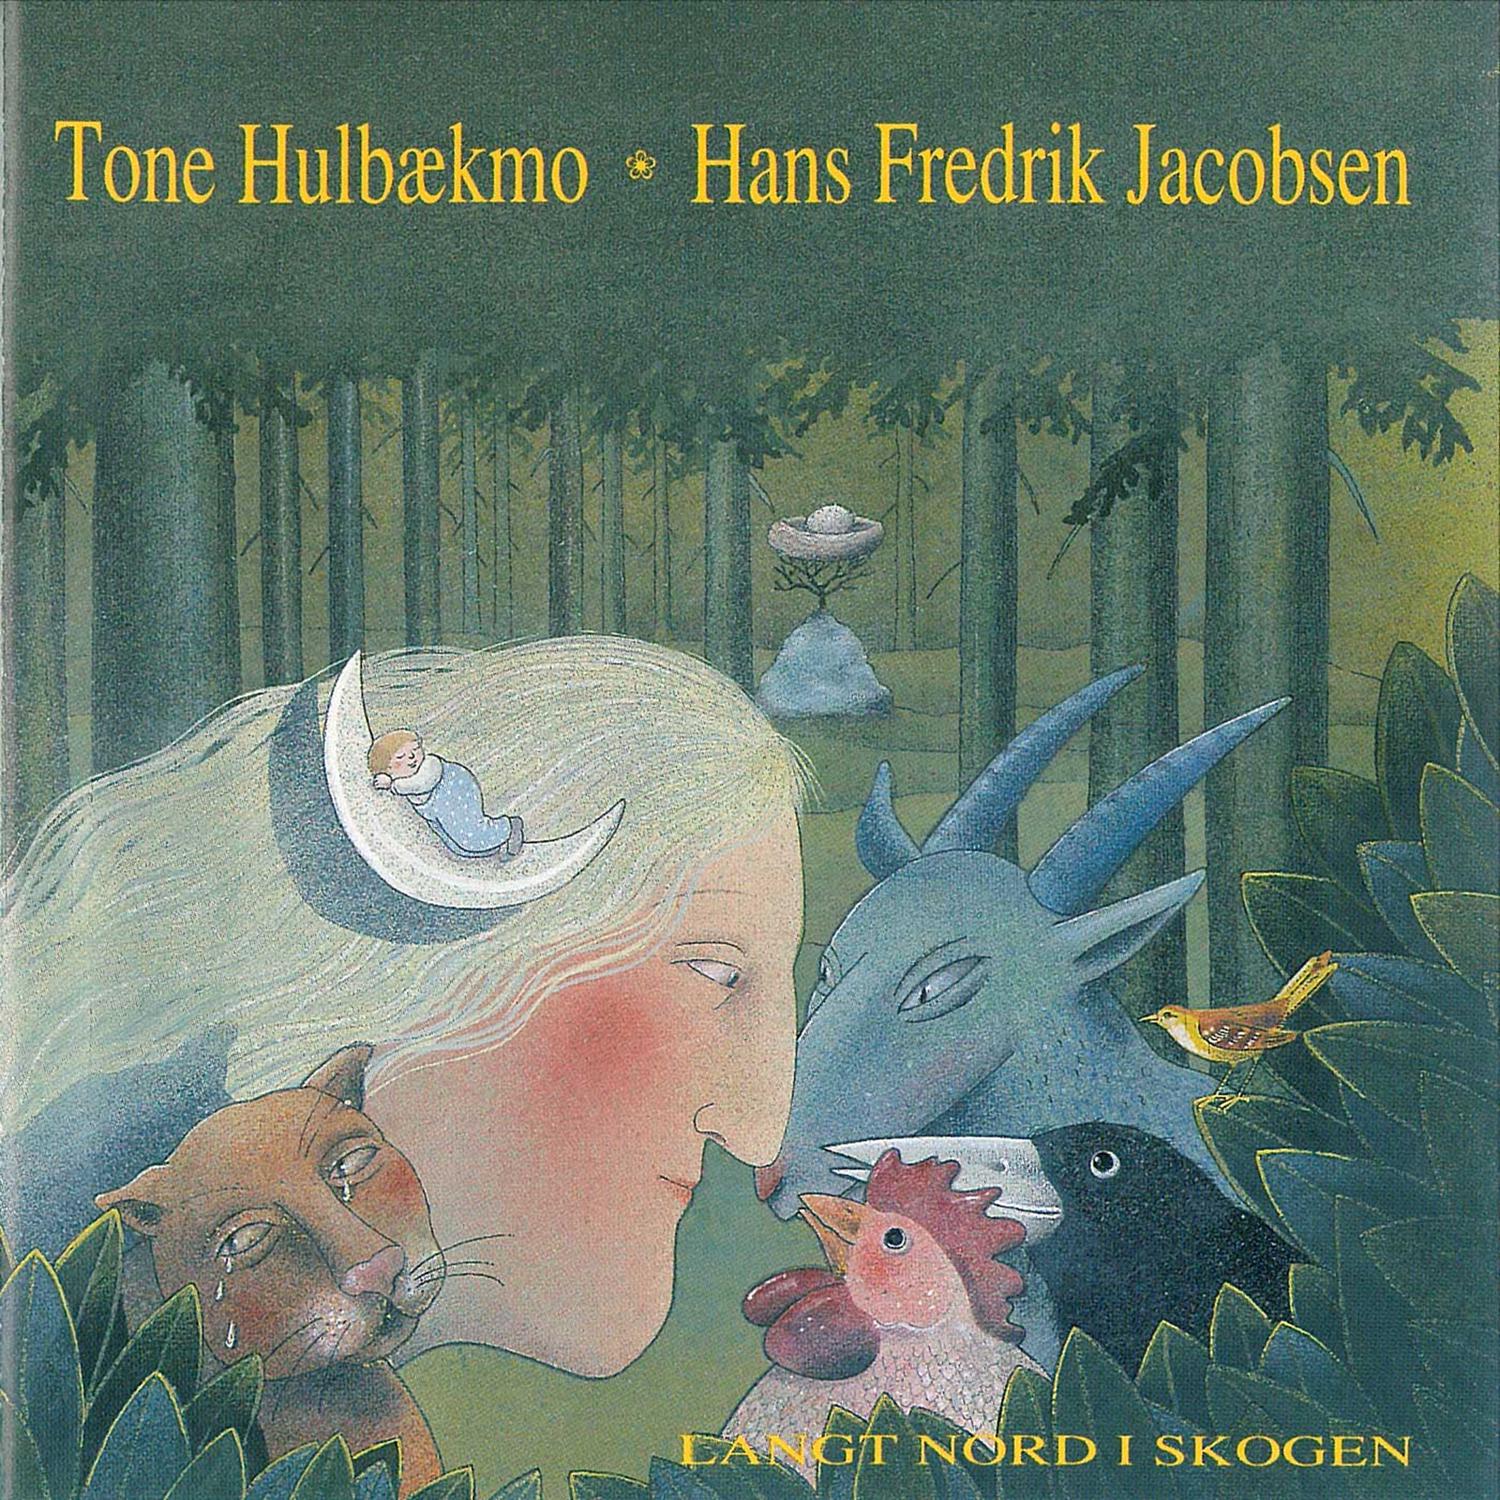 Tone Hulbækmo - Langt Nord I Skogen